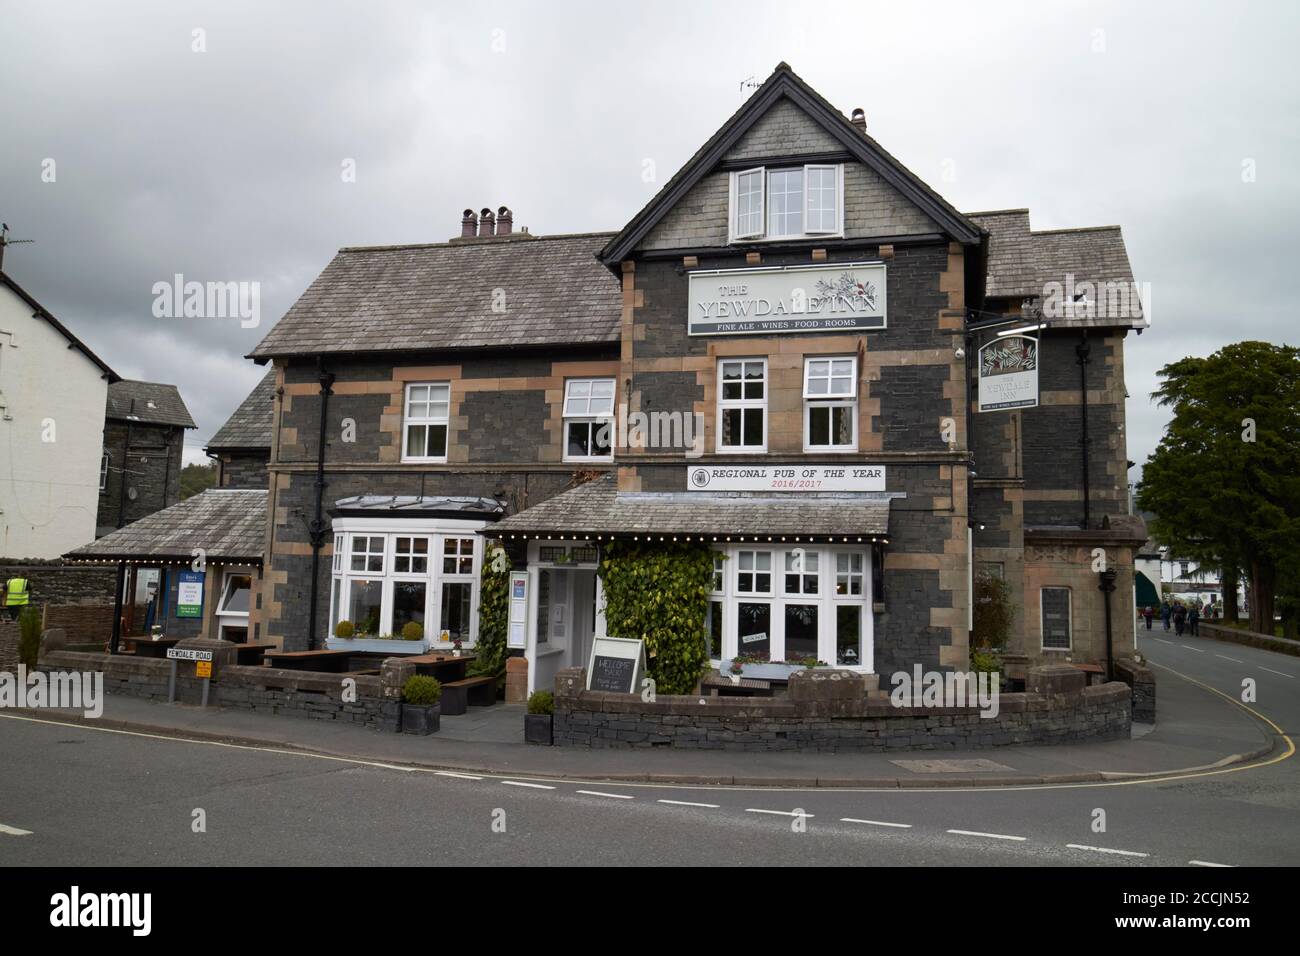 l'hôtel et pub yewdale inn coniston lake district, cumbria, angleterre, royaume-uni Banque D'Images